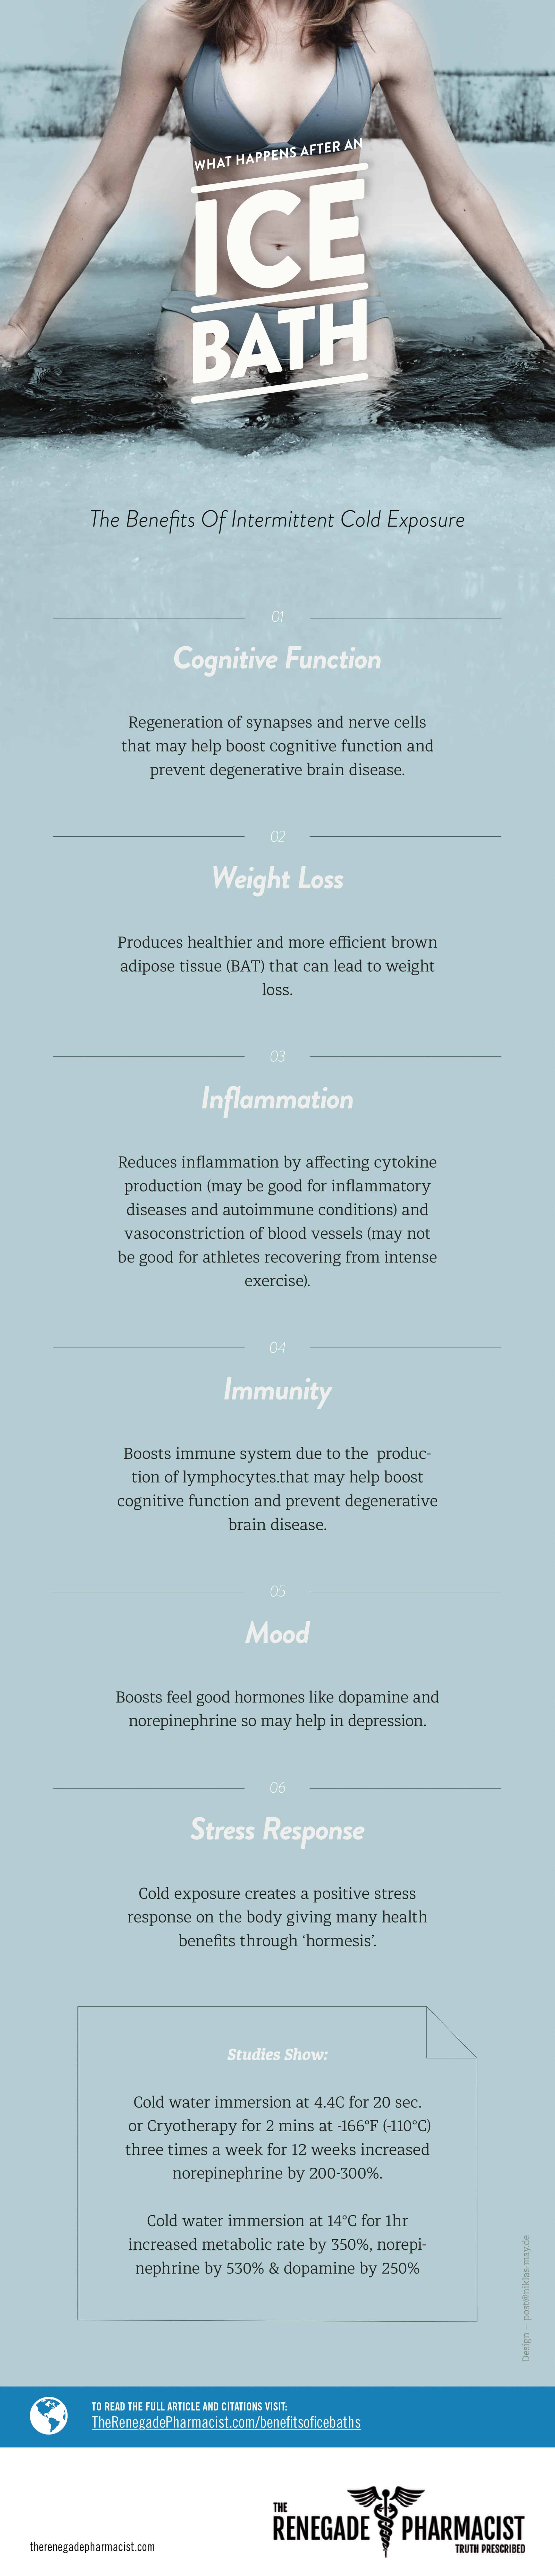 Ice Bath Benefits infographic